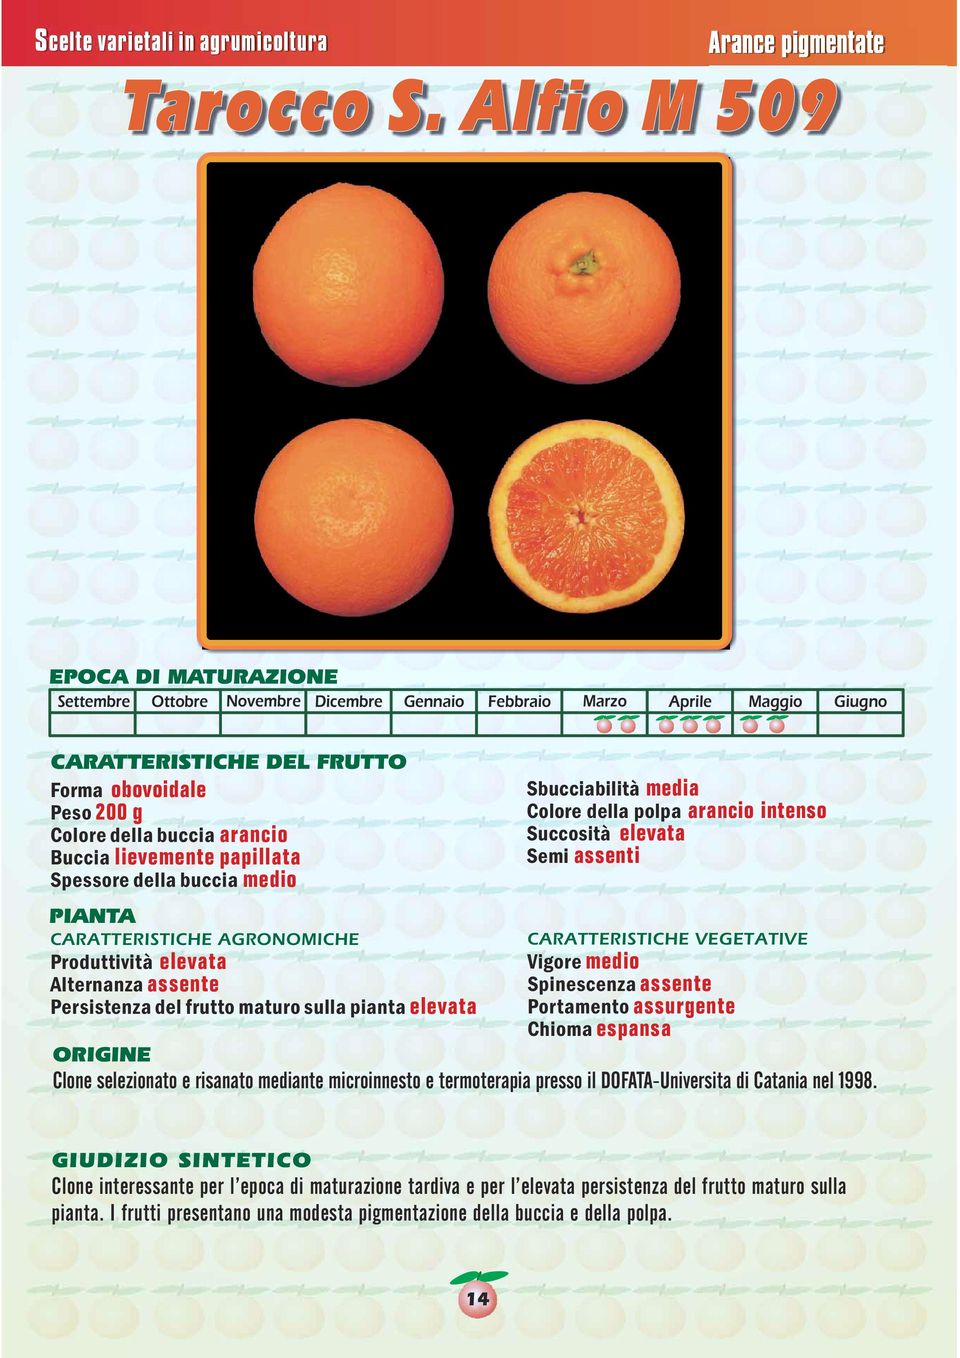 arancio intenso Succosità elevata Semi assenti Produttività elevata Spinescenza assente Persistenza del frutto maturo sulla pianta elevata Portamento assurgente Chioma